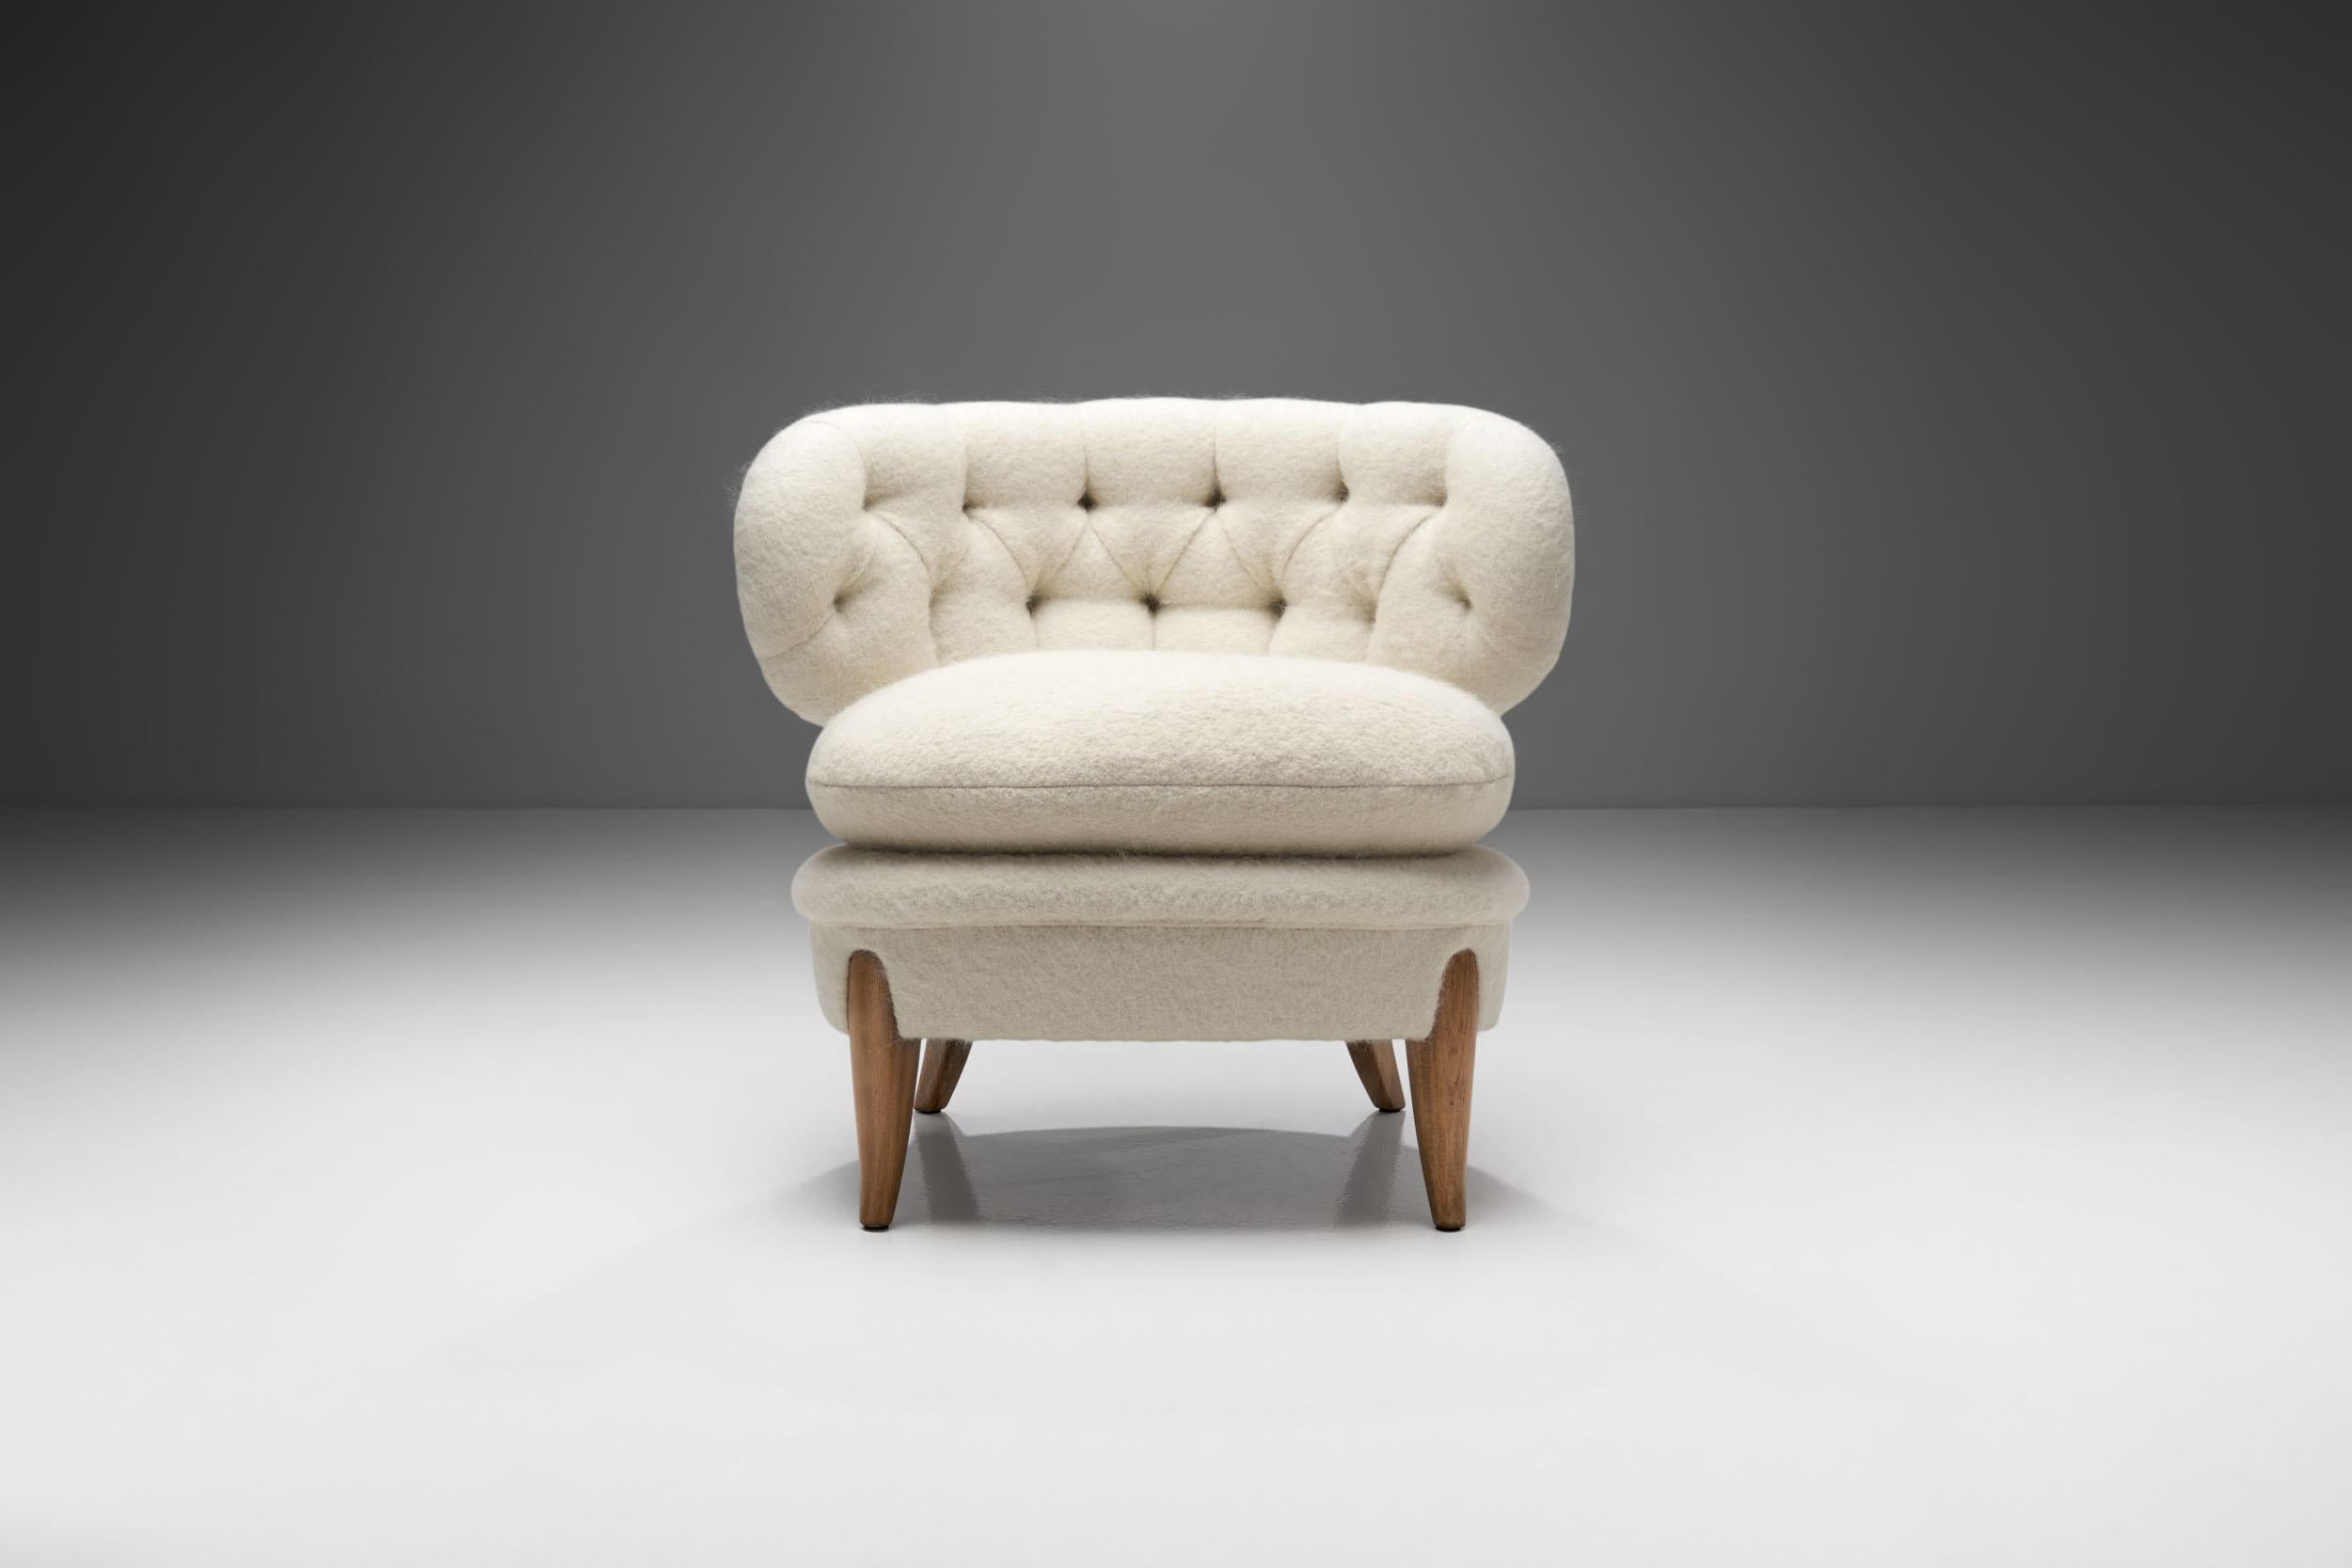 Scandinavian Modern “Schulz” Lounge Chair by Otto Schulz for Jio Möbler Jönköping, Sweden, 1940s